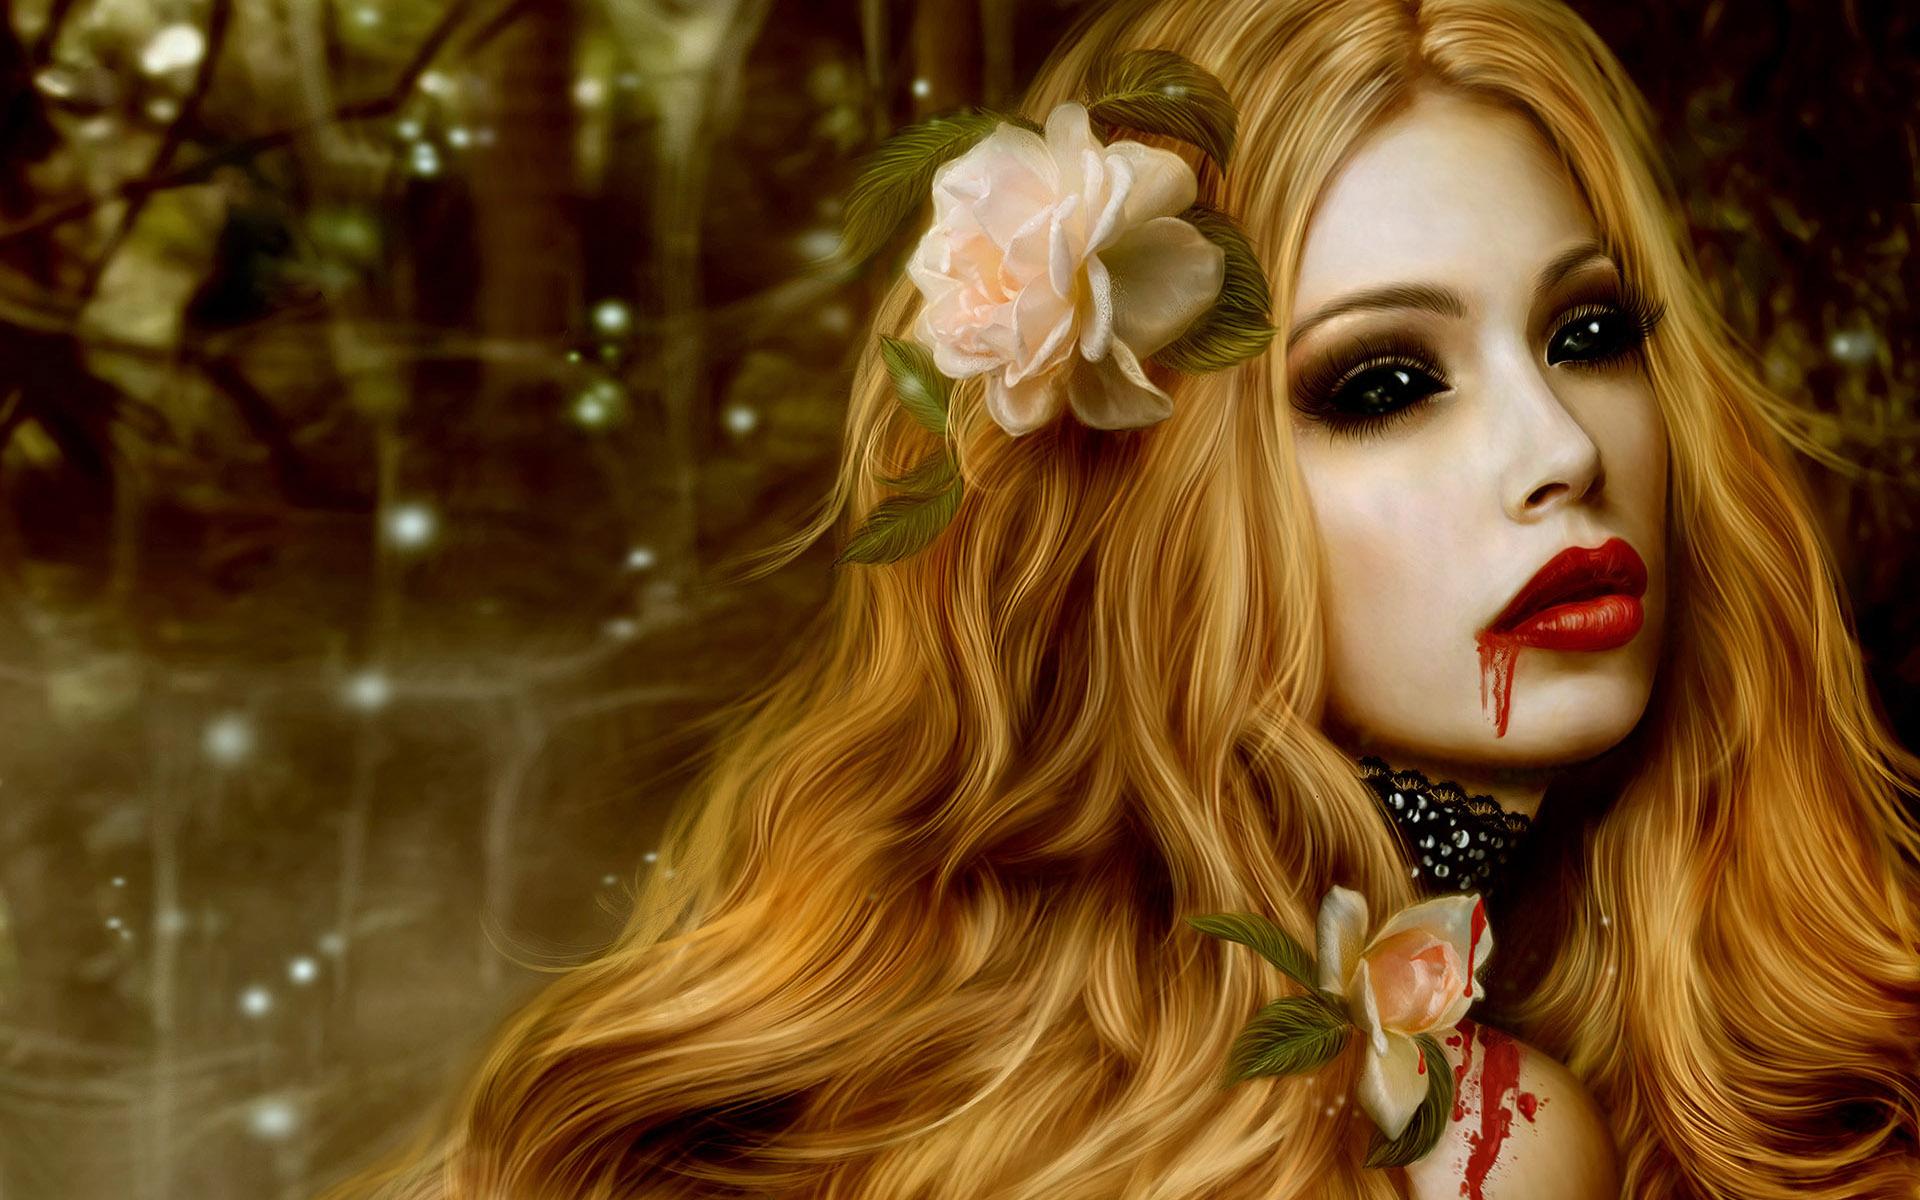 rose, vampire, face, fantasy, black eyes, blonde, flower